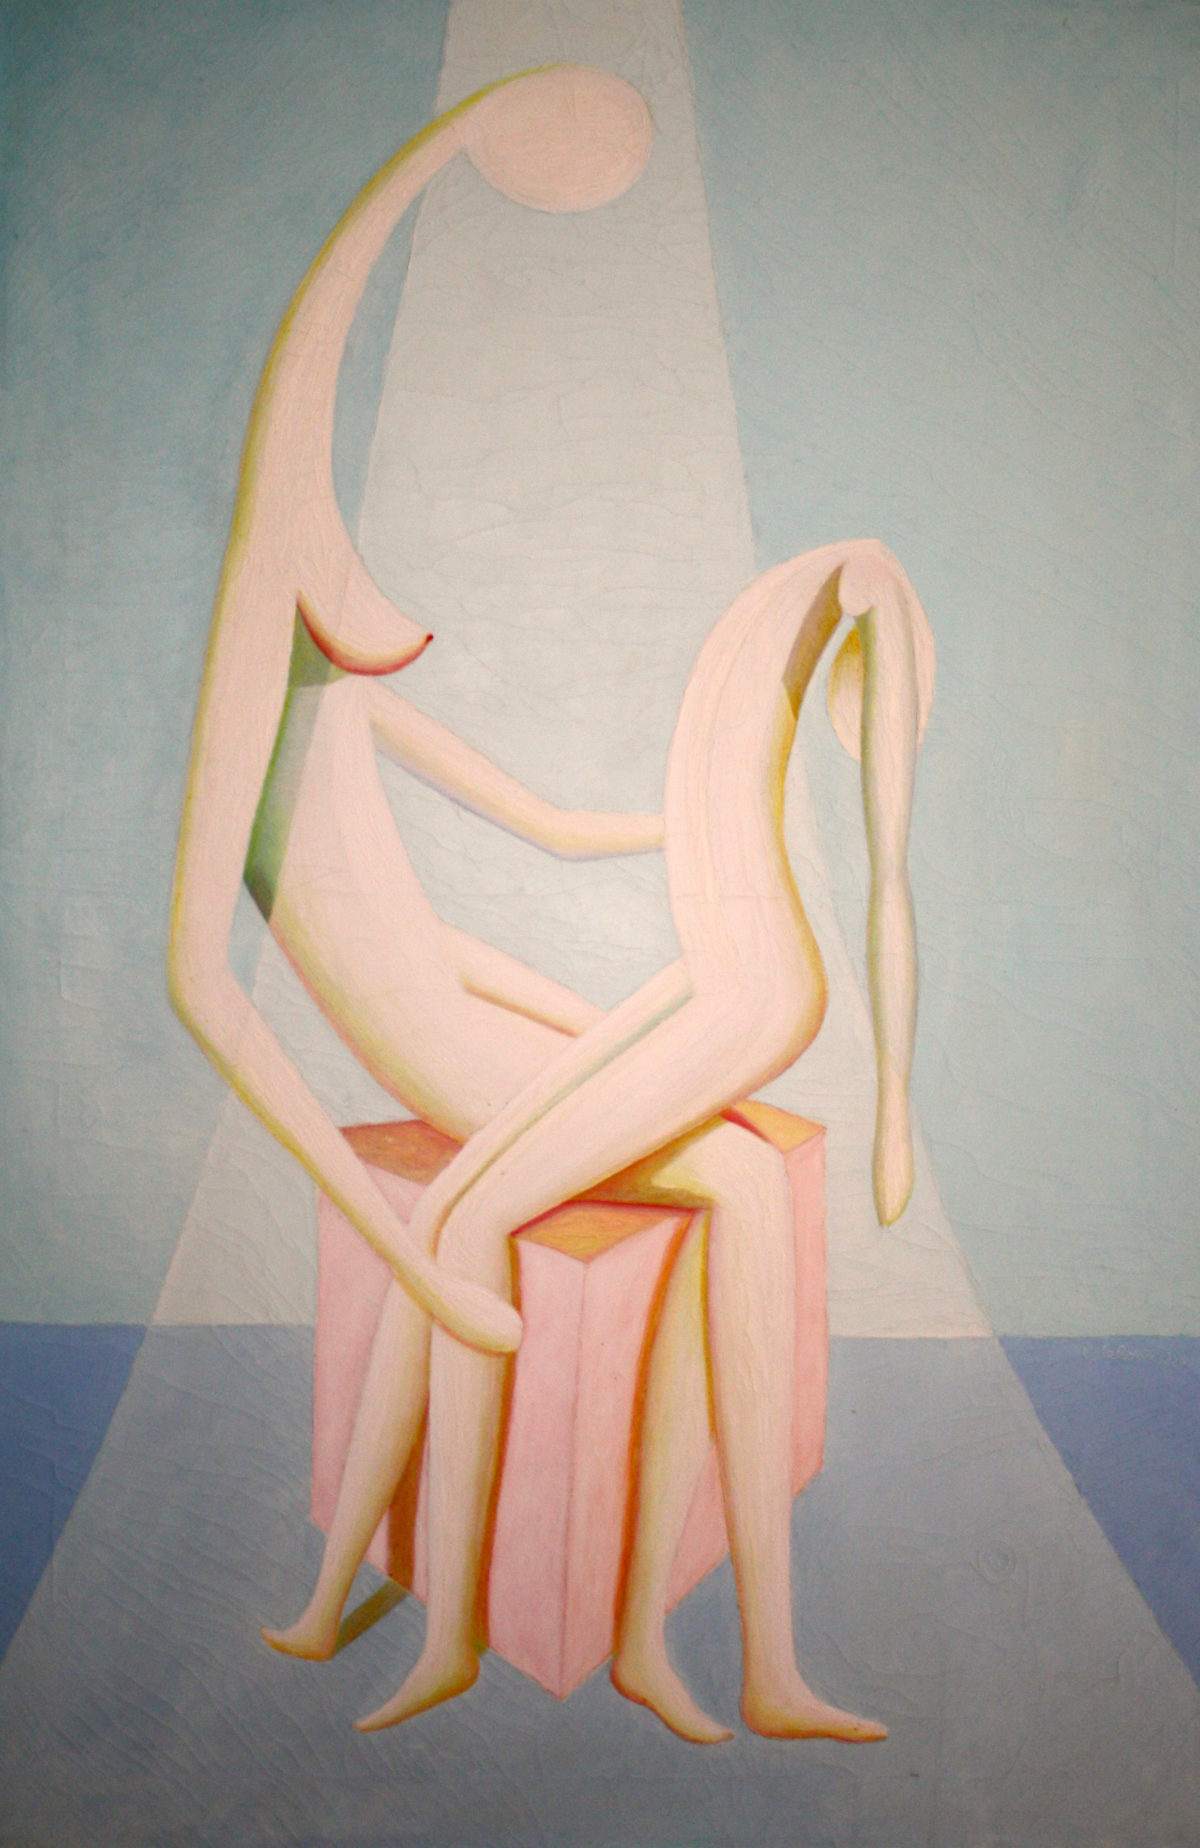 Pietà, ca. 1985
Olio su tela
100 x 80 cm
C301